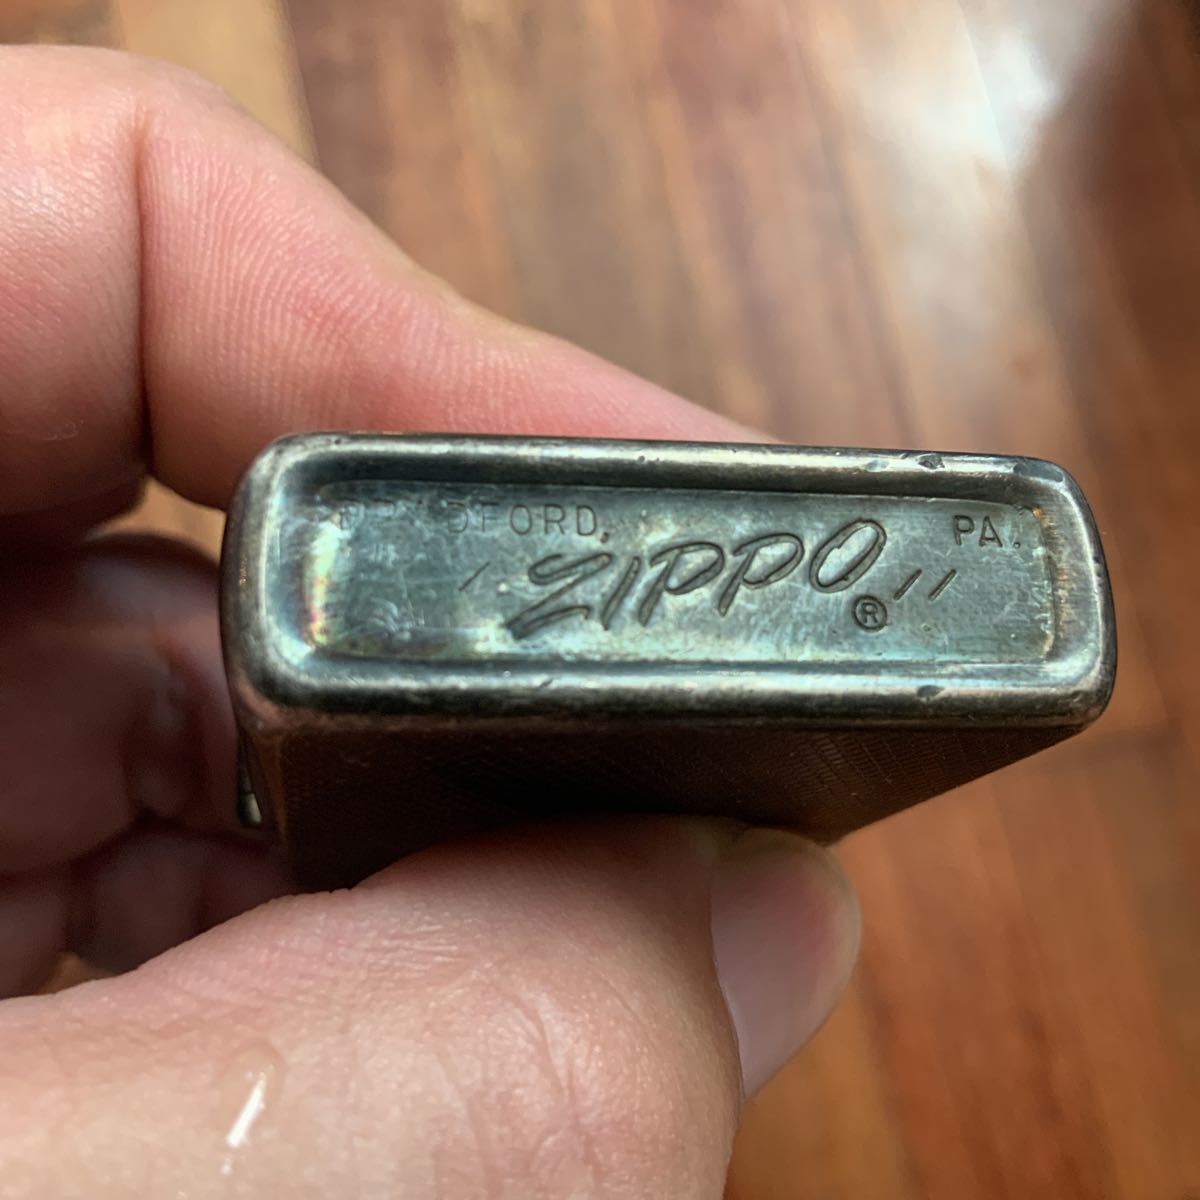 Yahoo!オークション -「zippo ビンテージ 1979年」(Zippo) (ライター